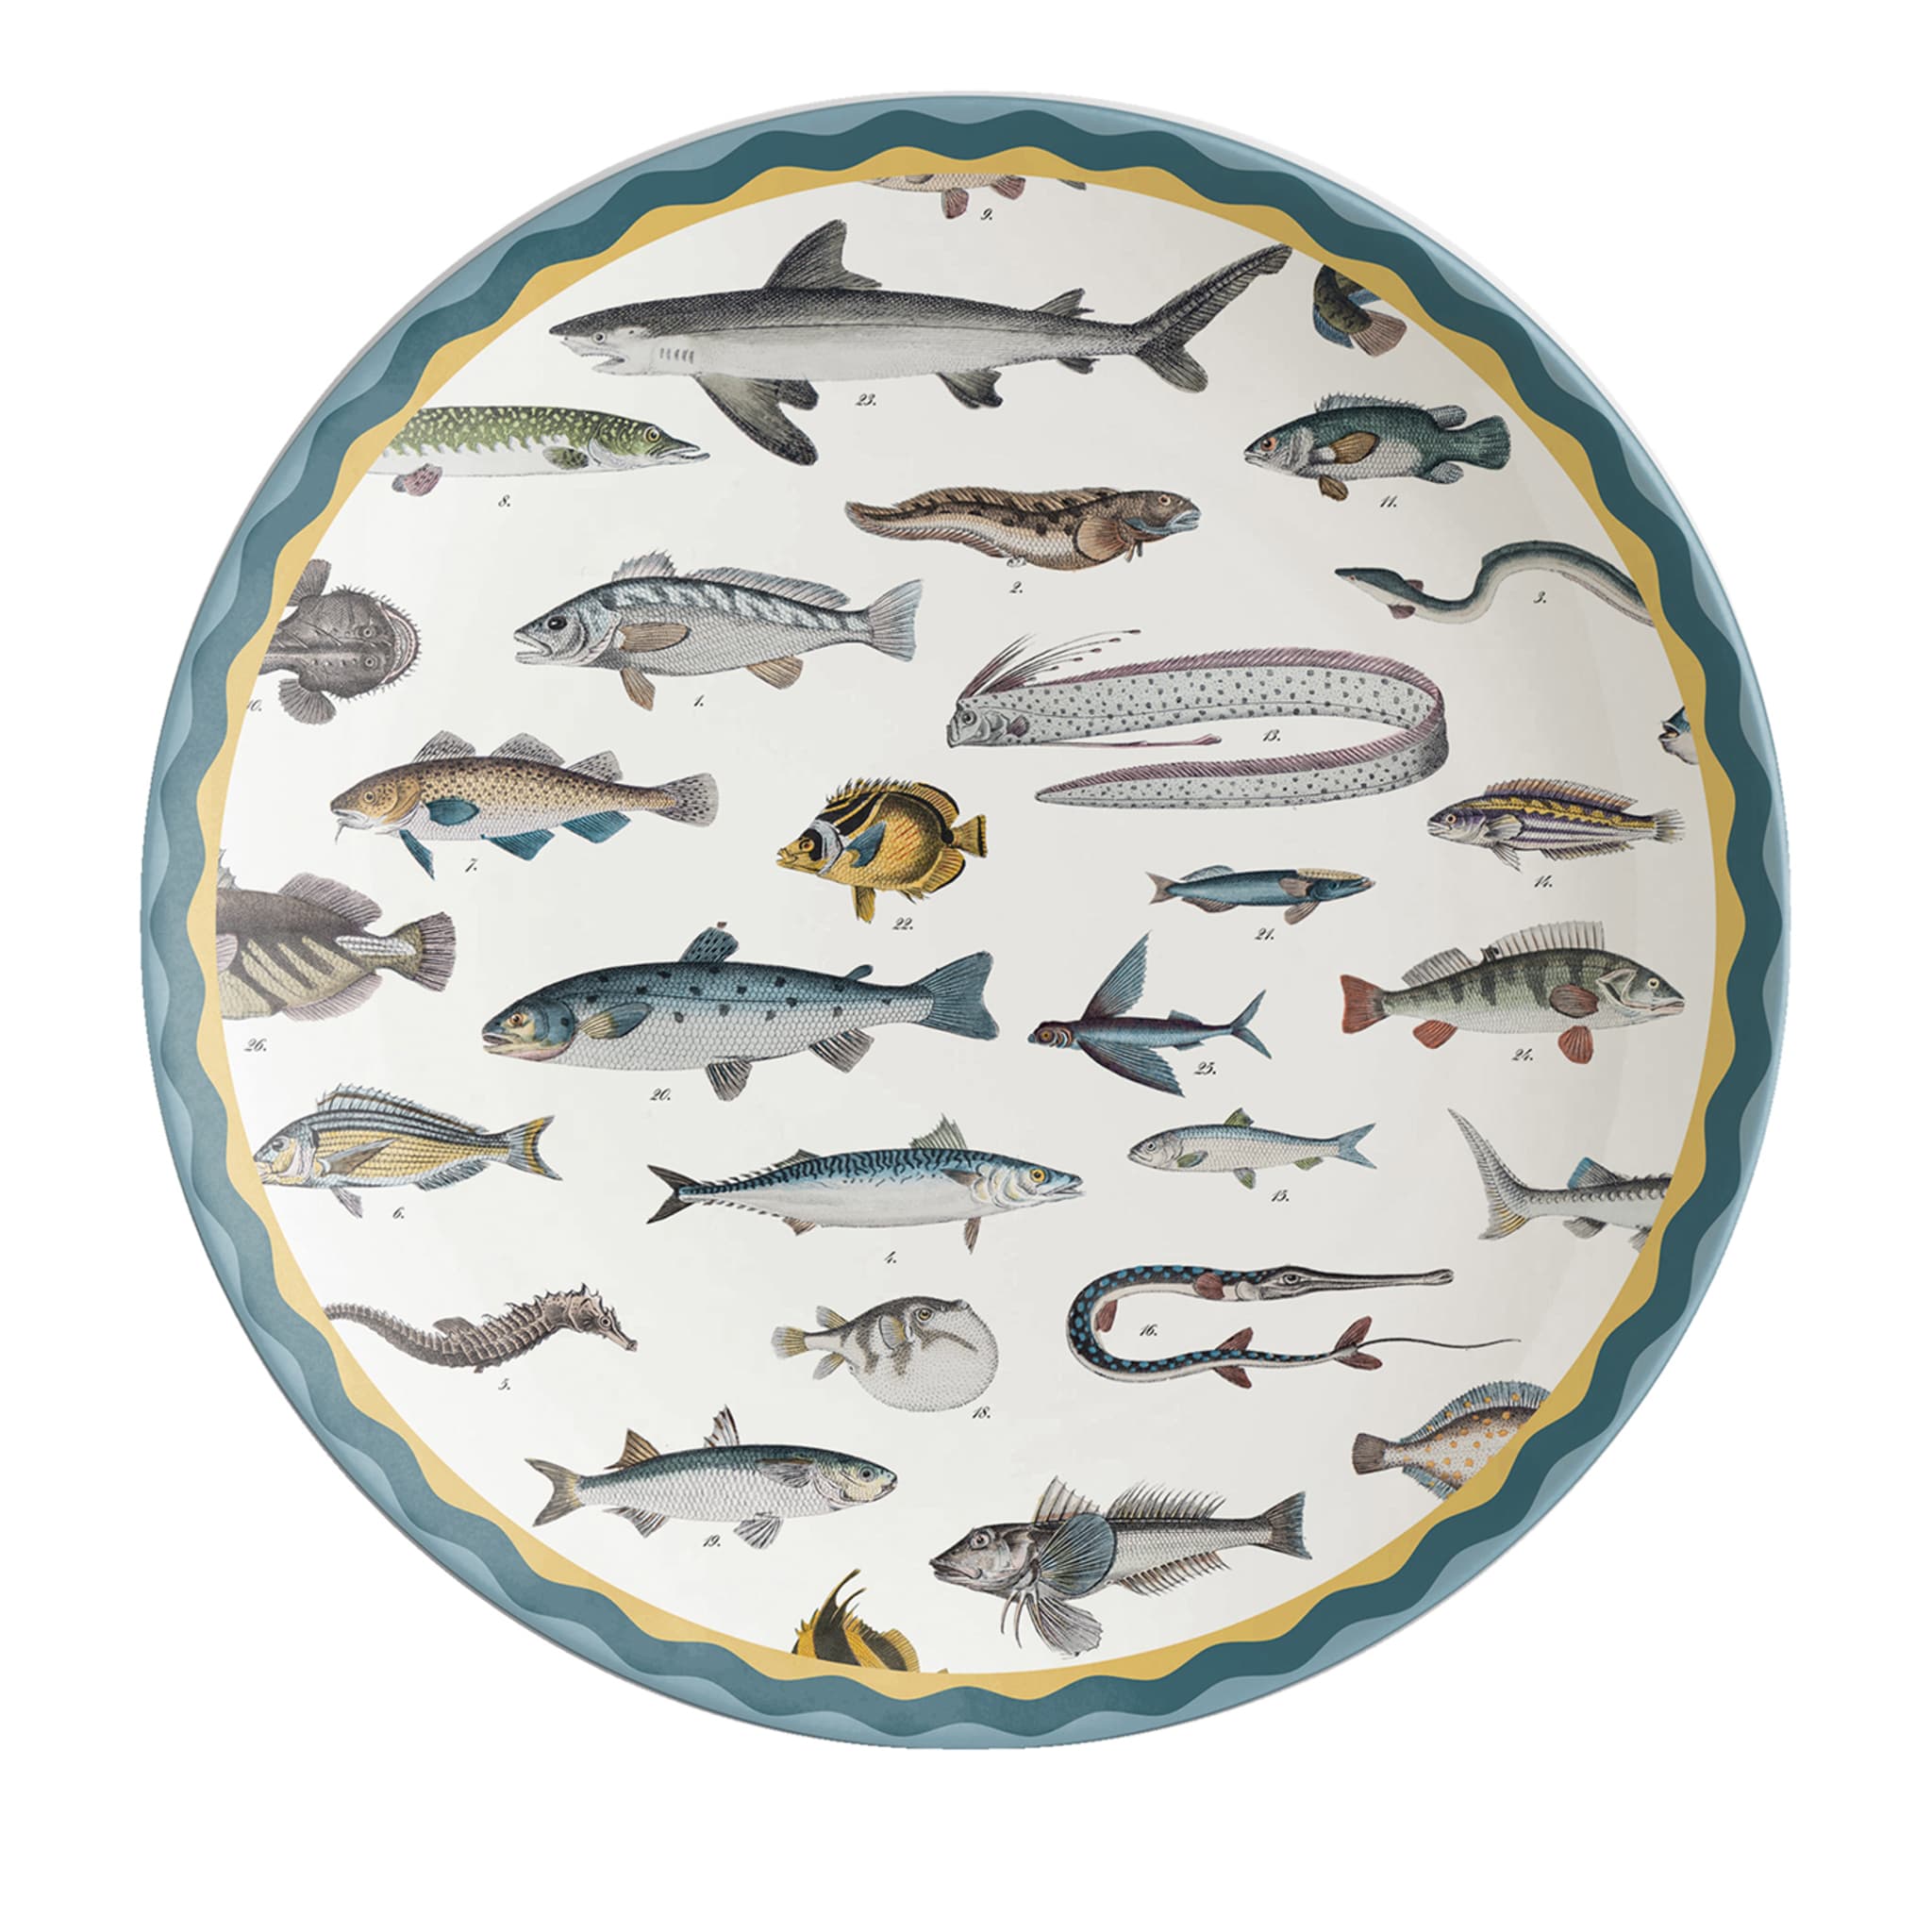 Cabinet de Curiosités Fish Charger Plate - Main view